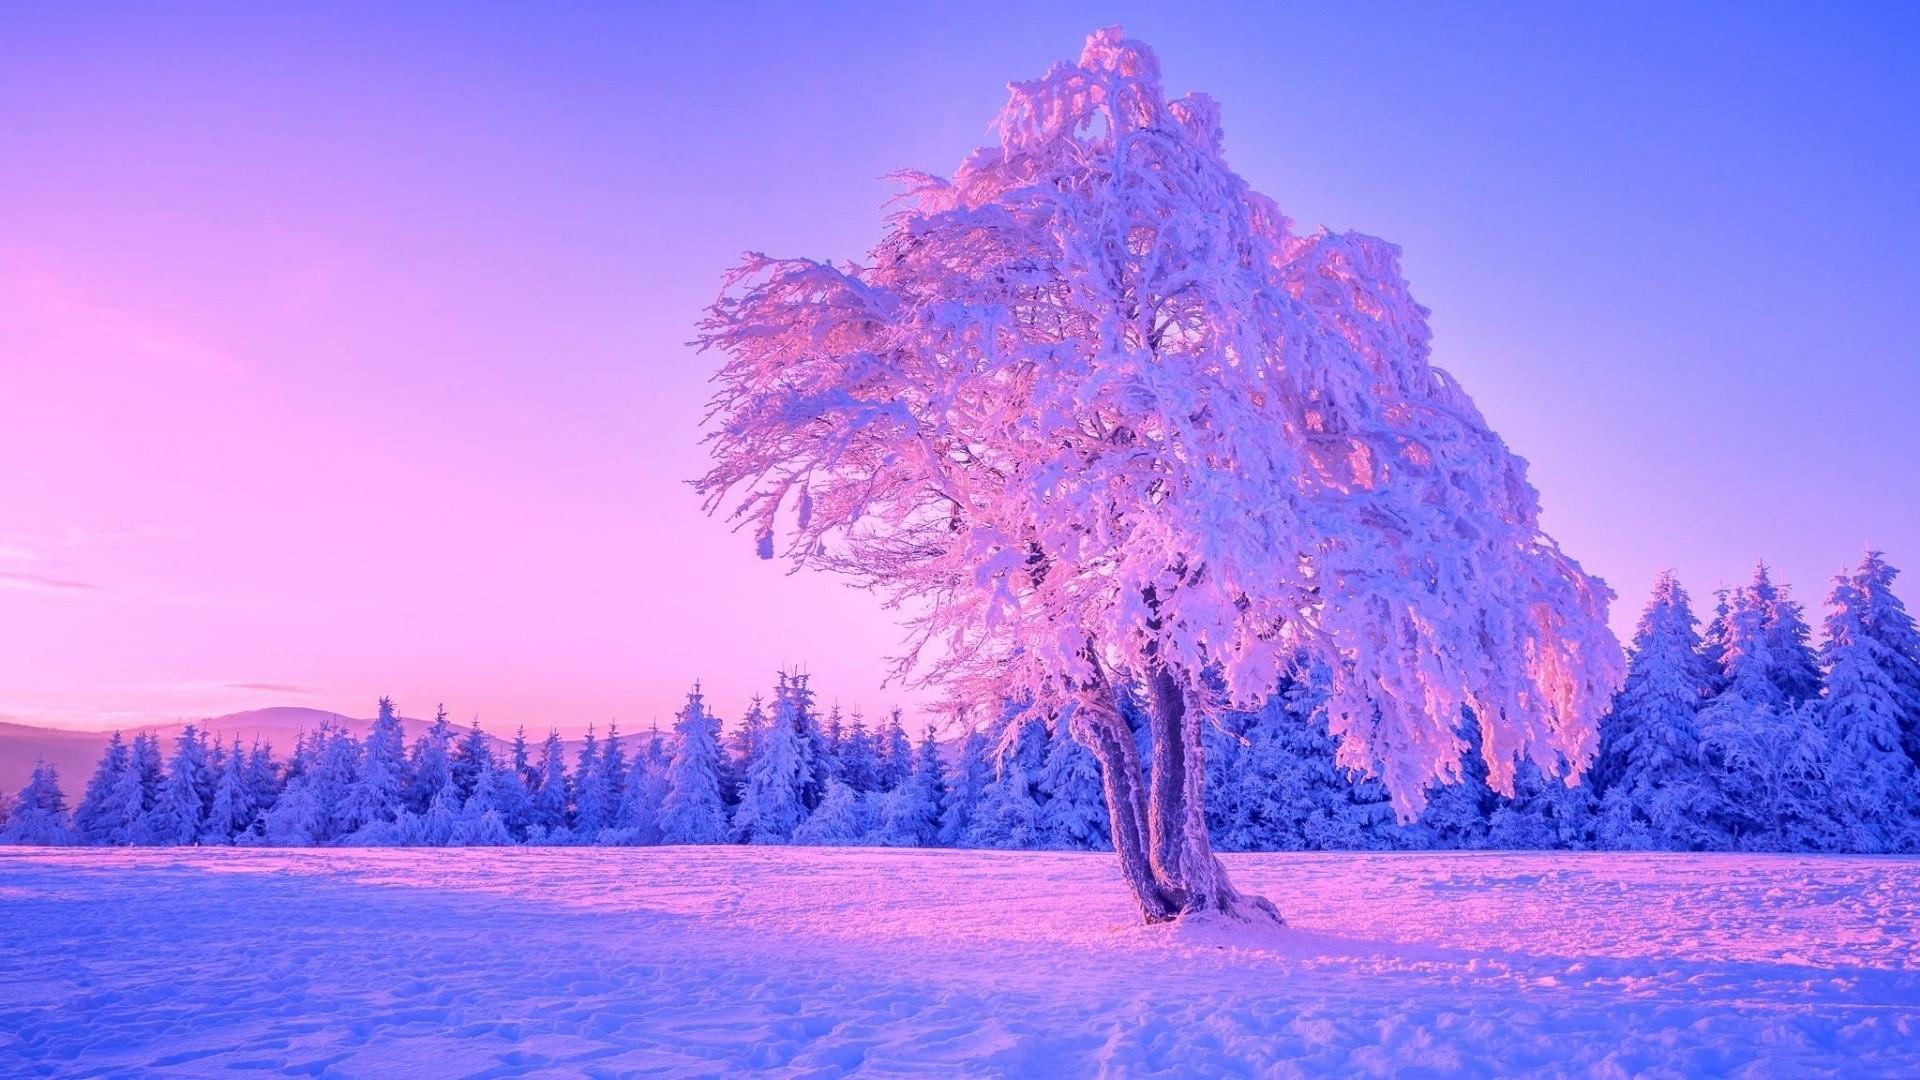 Картинки зима, лес, снег, свет, фонари, вечер, деревья, природа, зима -  обои 1920x1080, картинка №37195